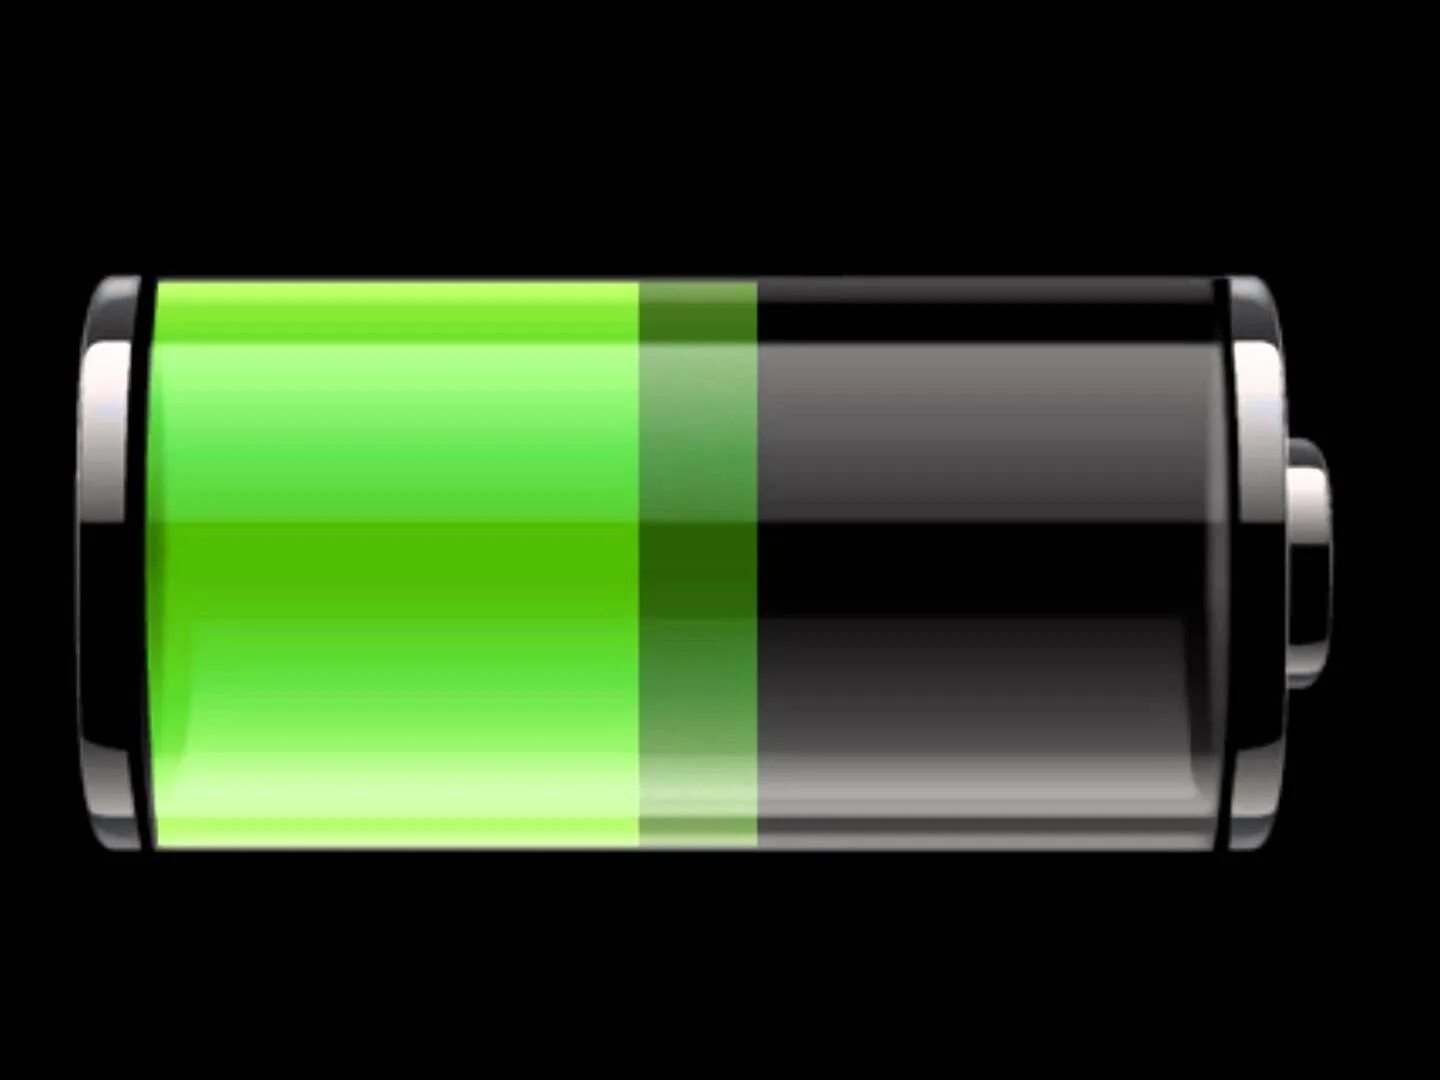 Зарядка разрядка аккумулятора телефона. Села батарейка. Батарейка заряда зеленая 100%. Заряд батарейки. Разряженная батарейка.